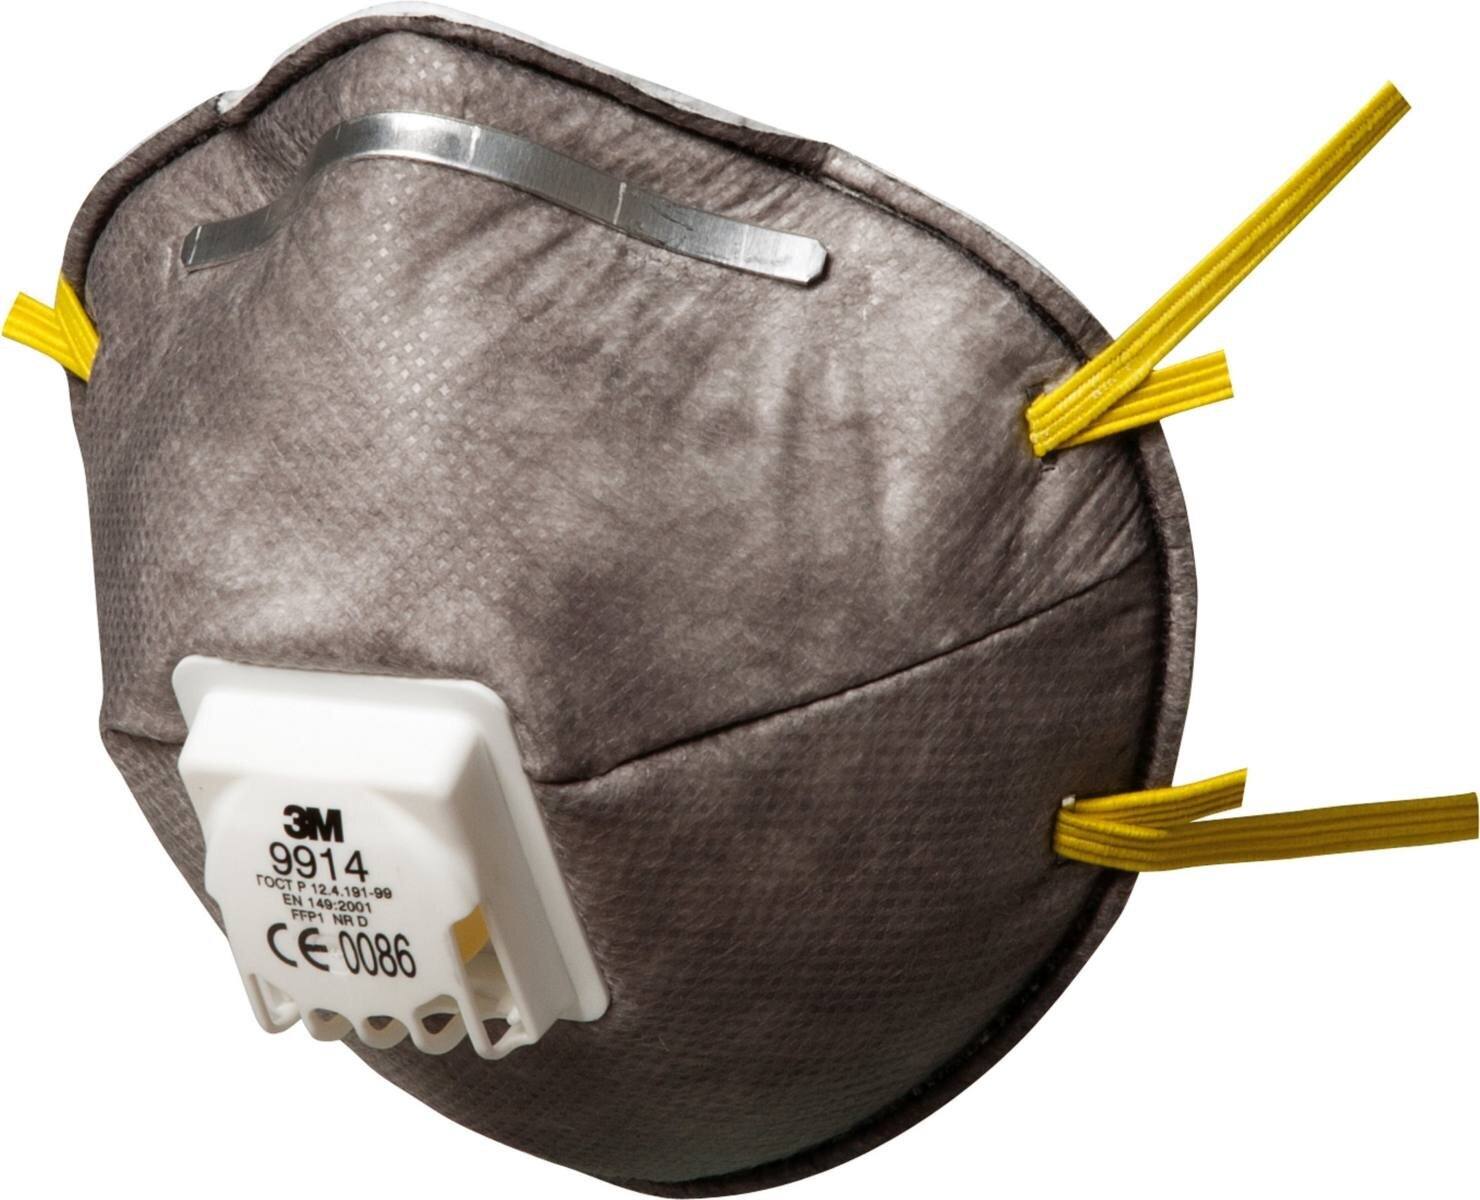 3M 9914 Masque anti-odeur FFP1 avec valve d'expiration Cool-Flow, jusqu'à 4 fois la valeur limite et contre les odeurs organiques inférieures à la valeur limite